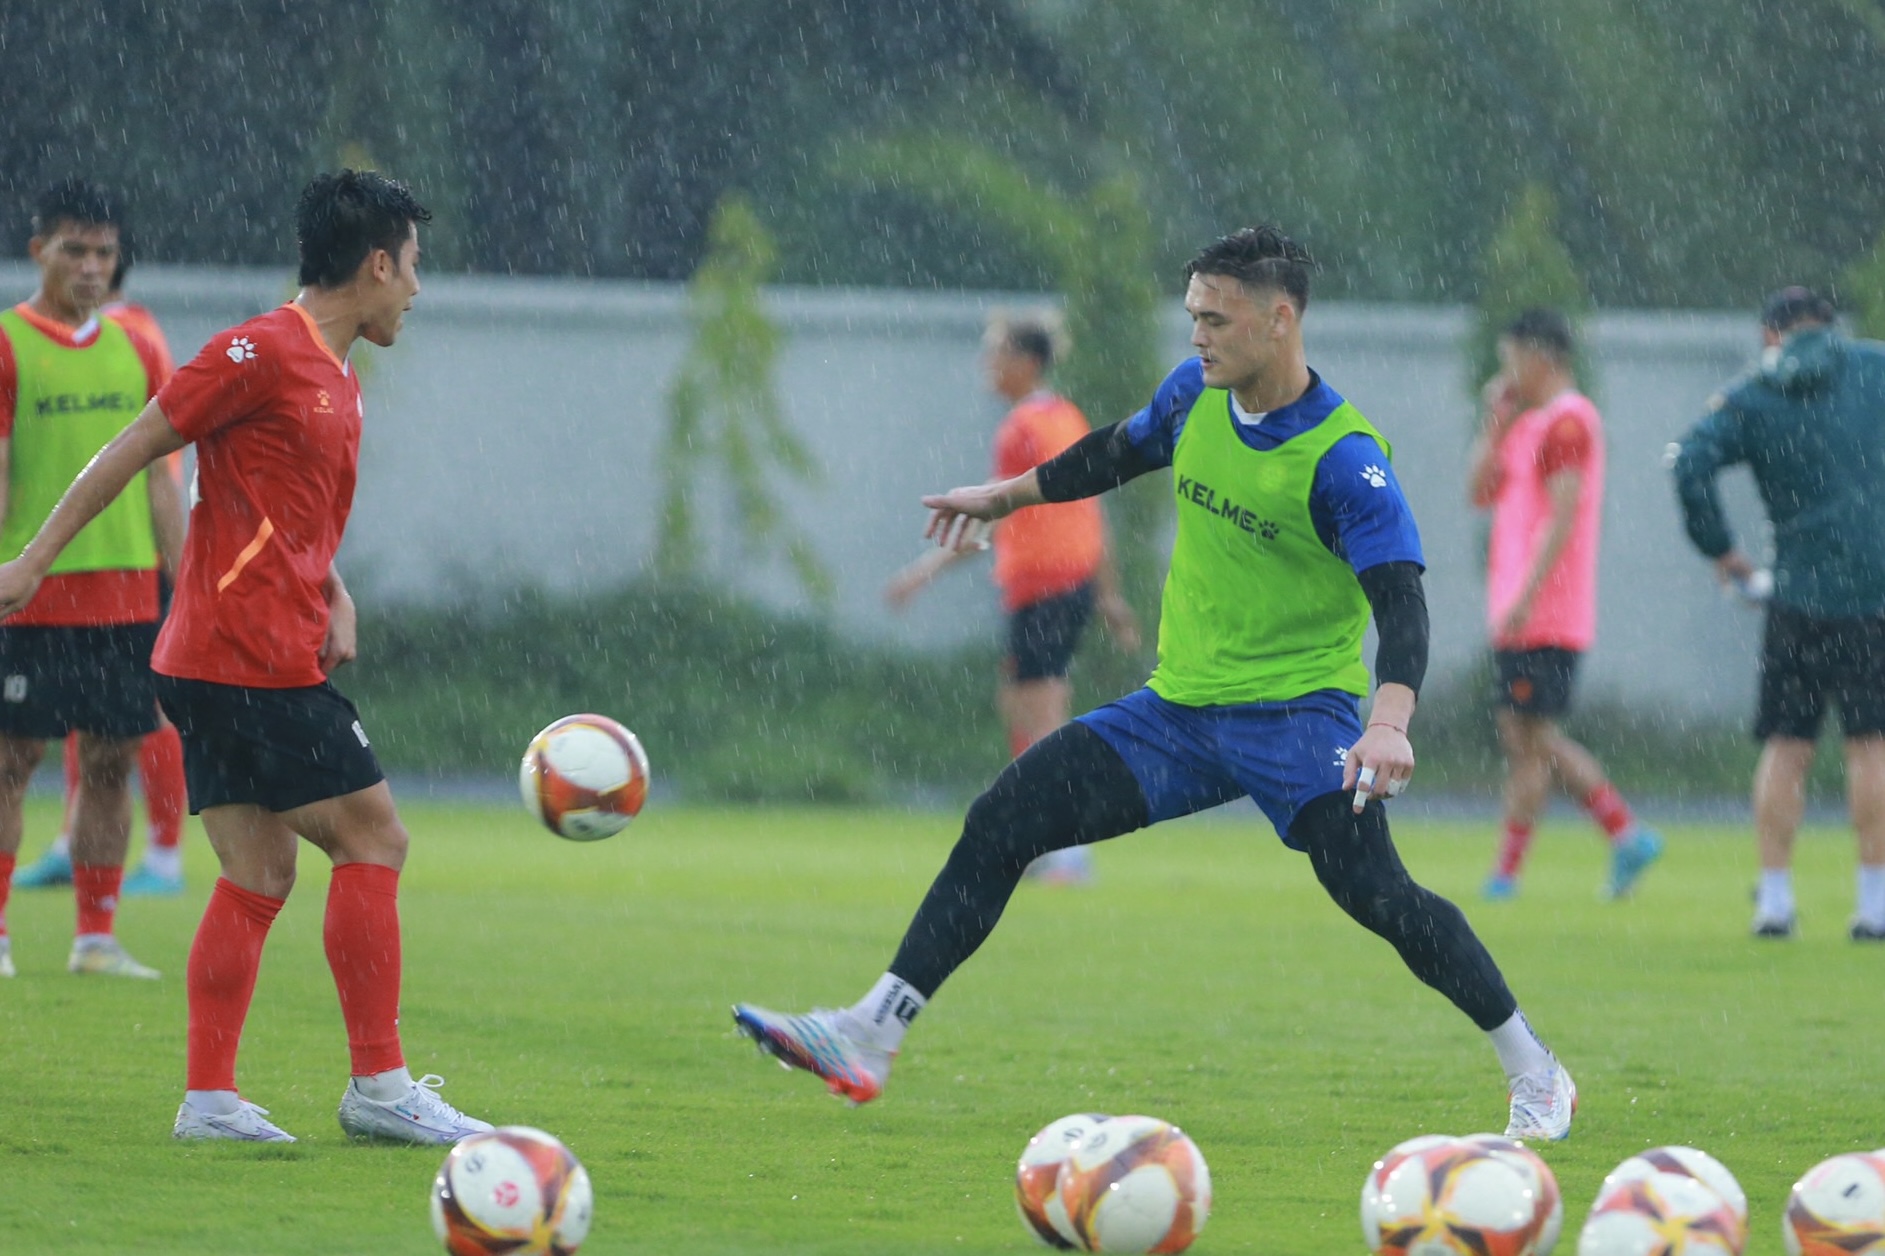 Patrik Lê Giang gia nhập câu lạc bộ TPHCM theo dạng cho mượn đến hết giai đoạn 2 V.League 2023. Anh sẽ thi đấu cho đội chủ sân Thống Nhất 5 trận và có nhiệm vụ cùng đội giành vé trụ hạng ở mùa giải năm nay.